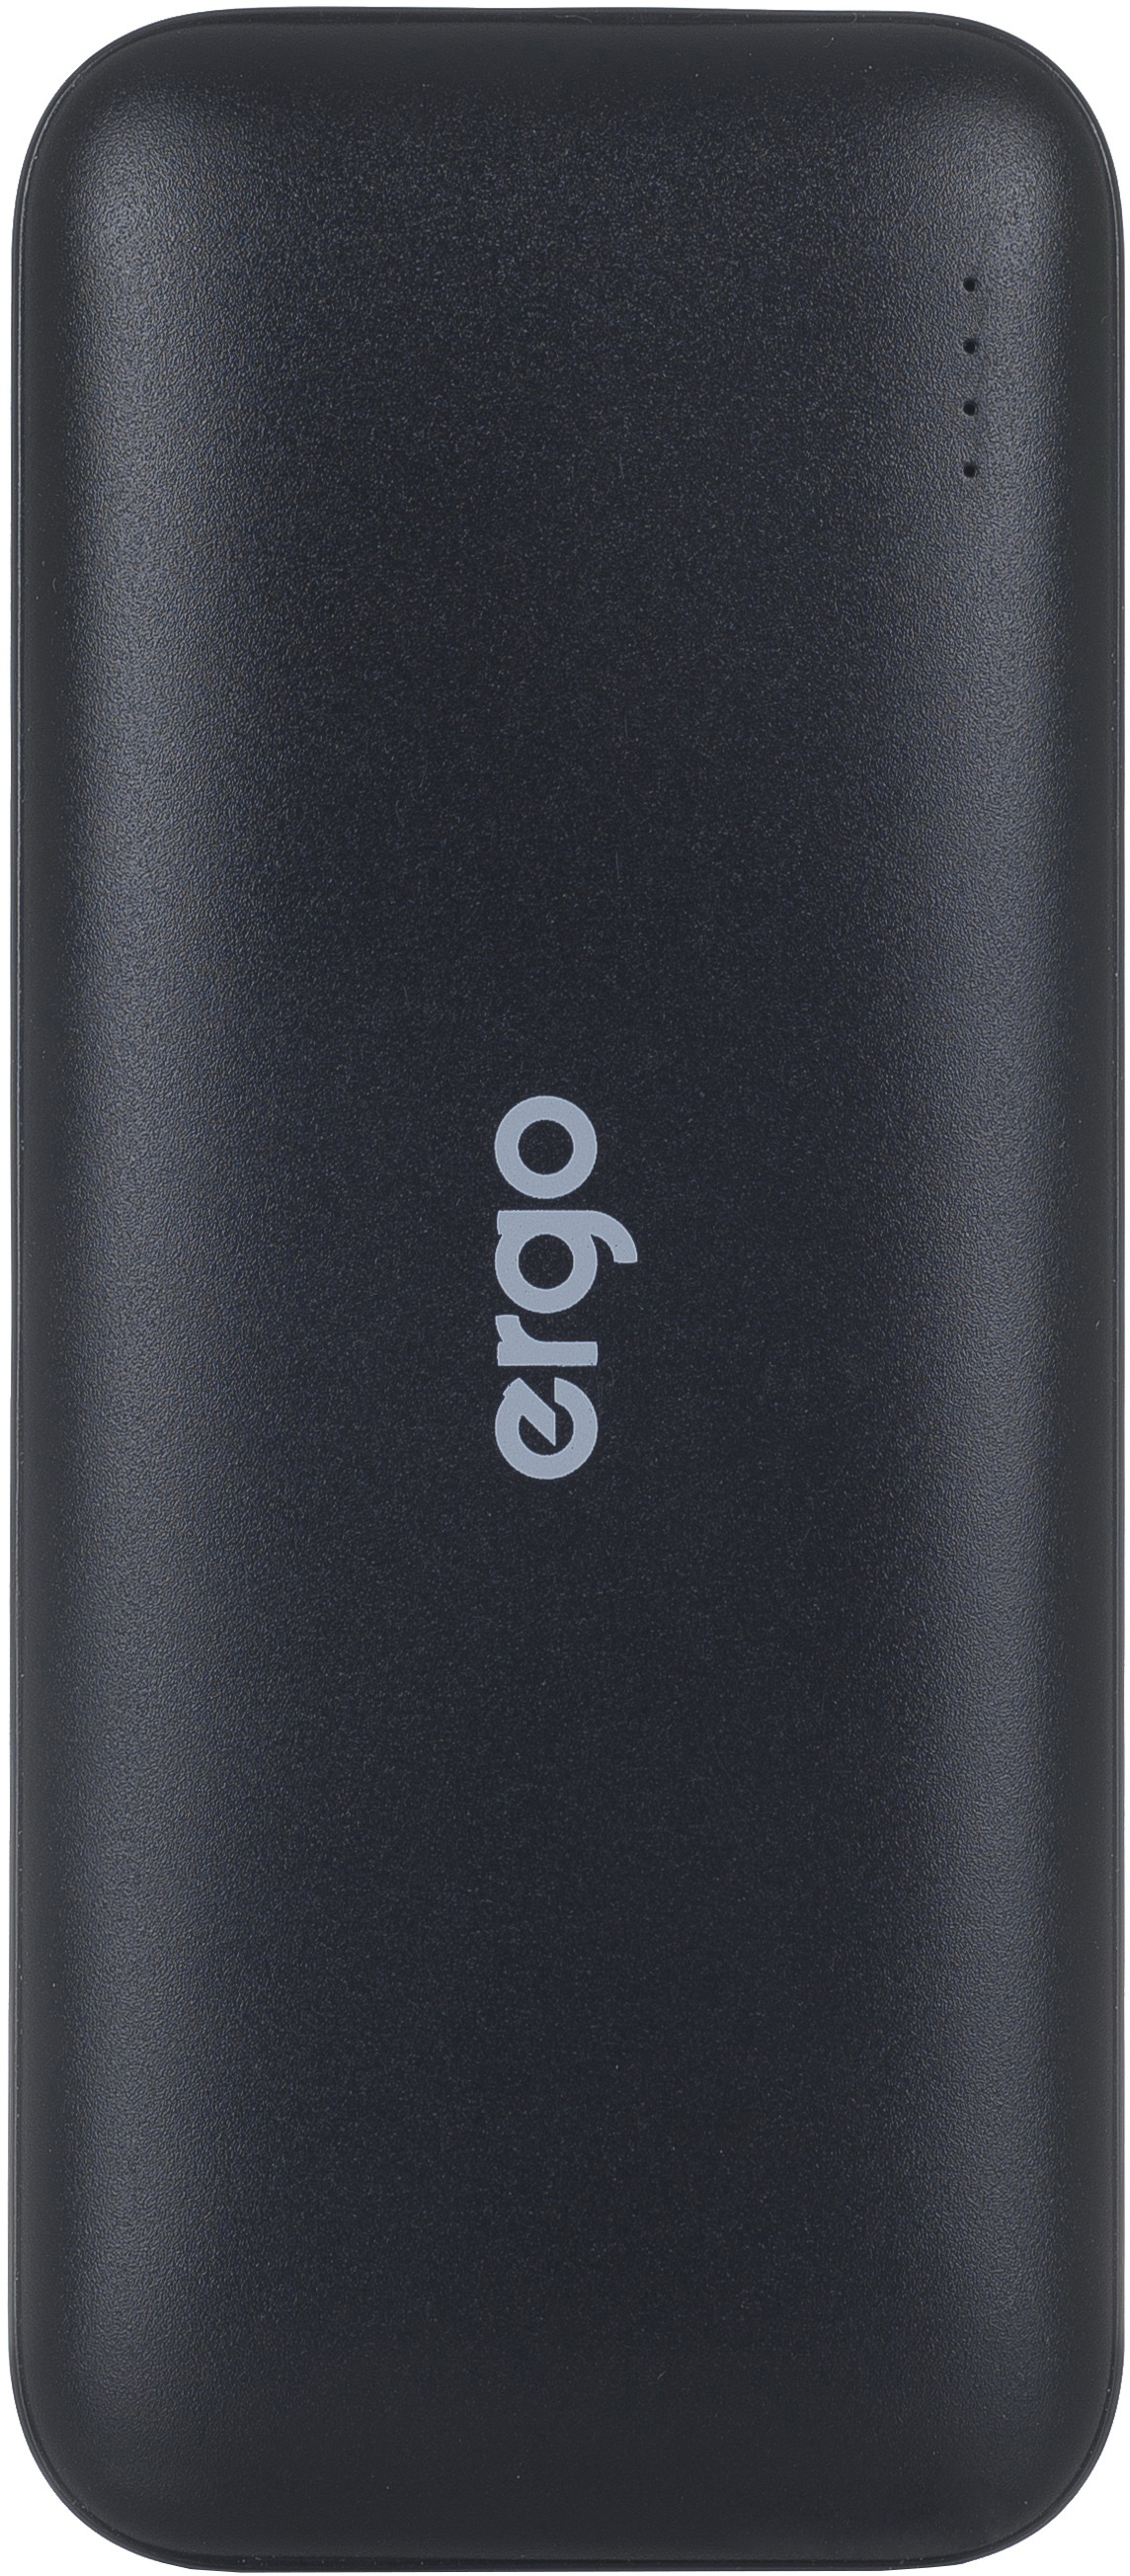 Универсальная мобильная батарея ERGO LI-16 12500 mAh Black в Киеве